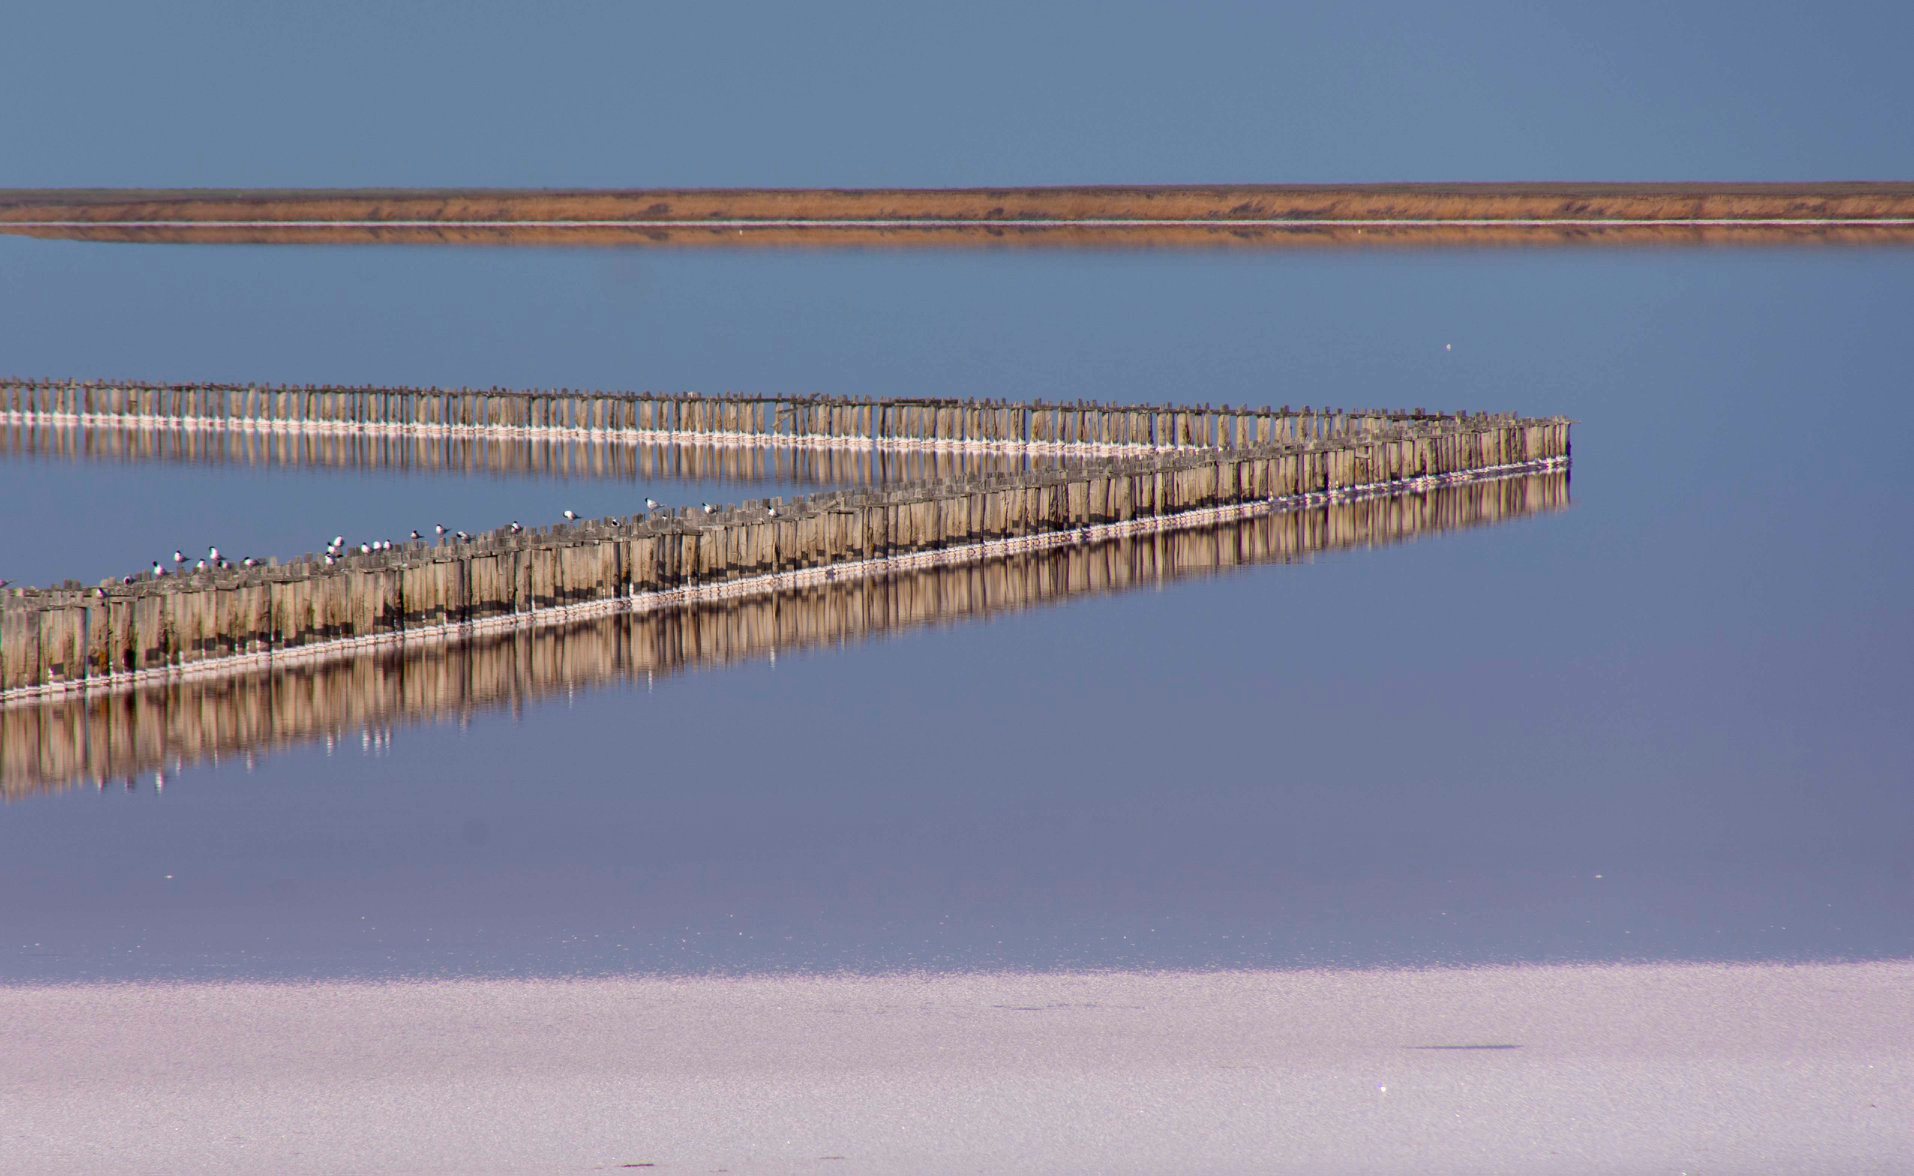 Запорожский фотограф показал чудеса Розового озера у Азовского моря (ФОТО)